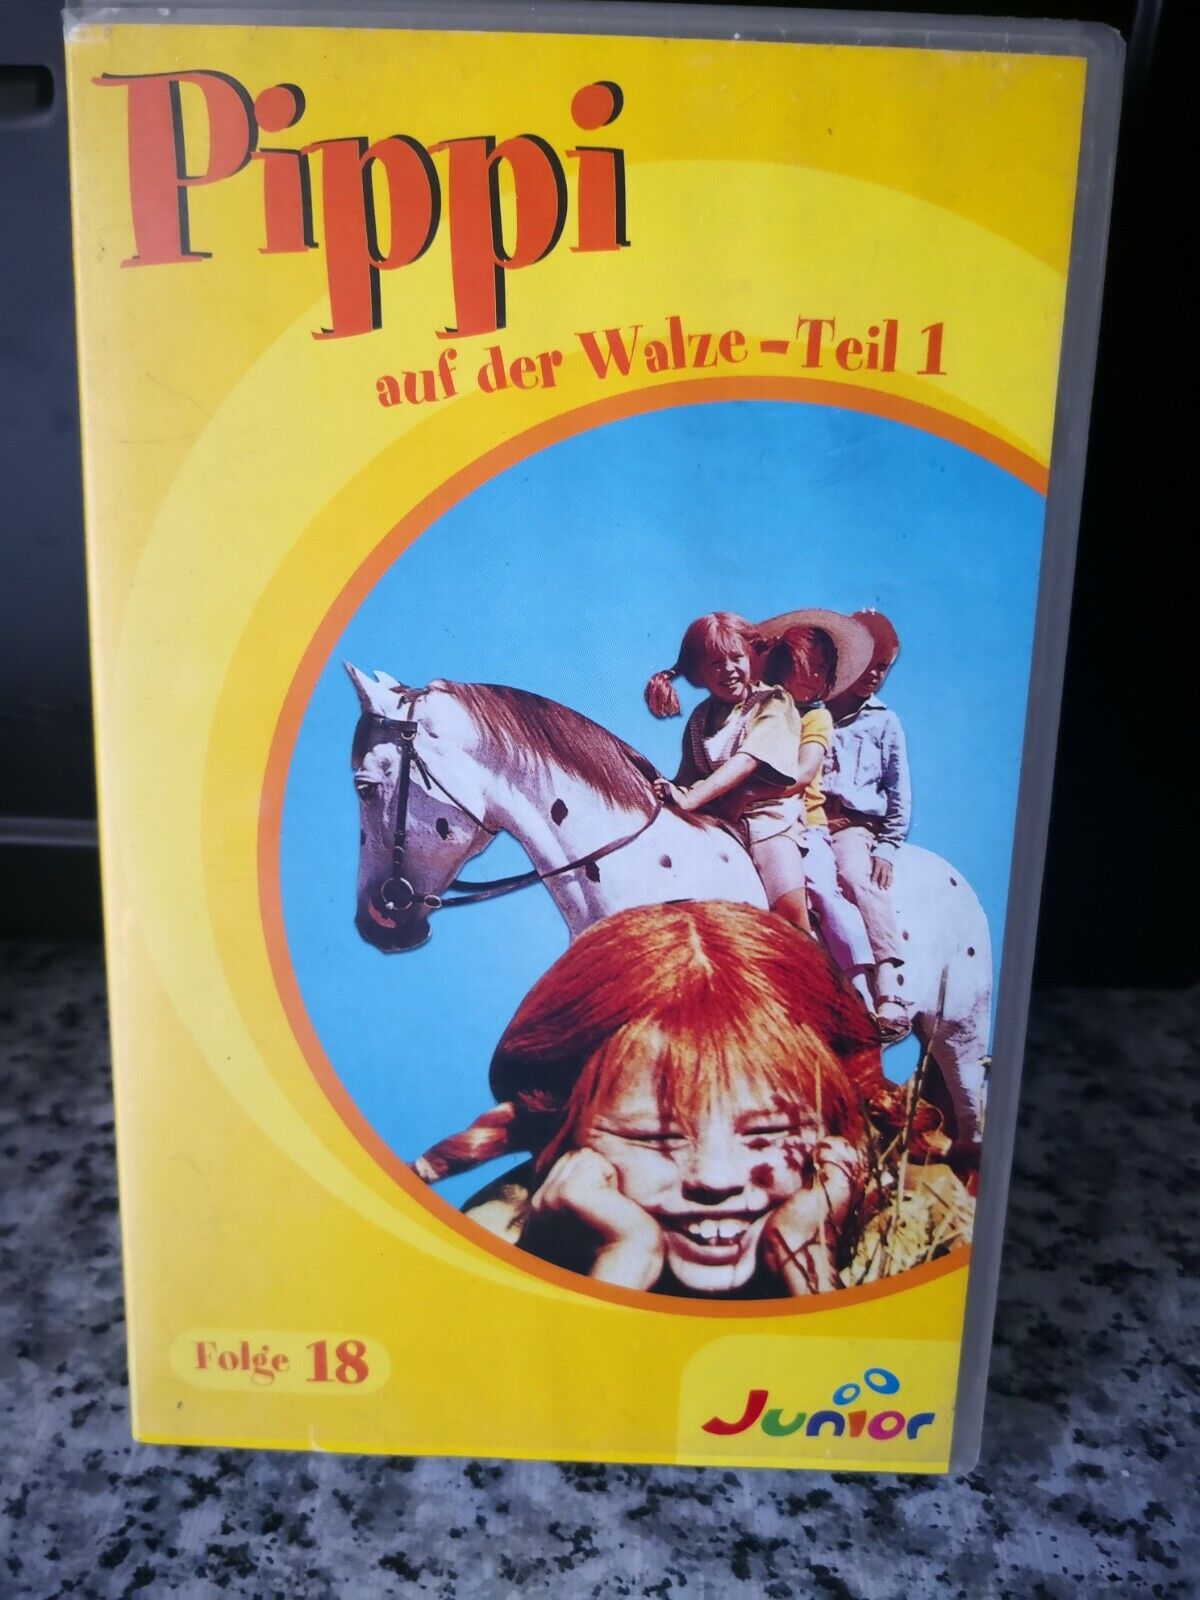 VHS film-PIPPI CALZELUNGHE su del tamburo 1 - 1968 - Junior -F